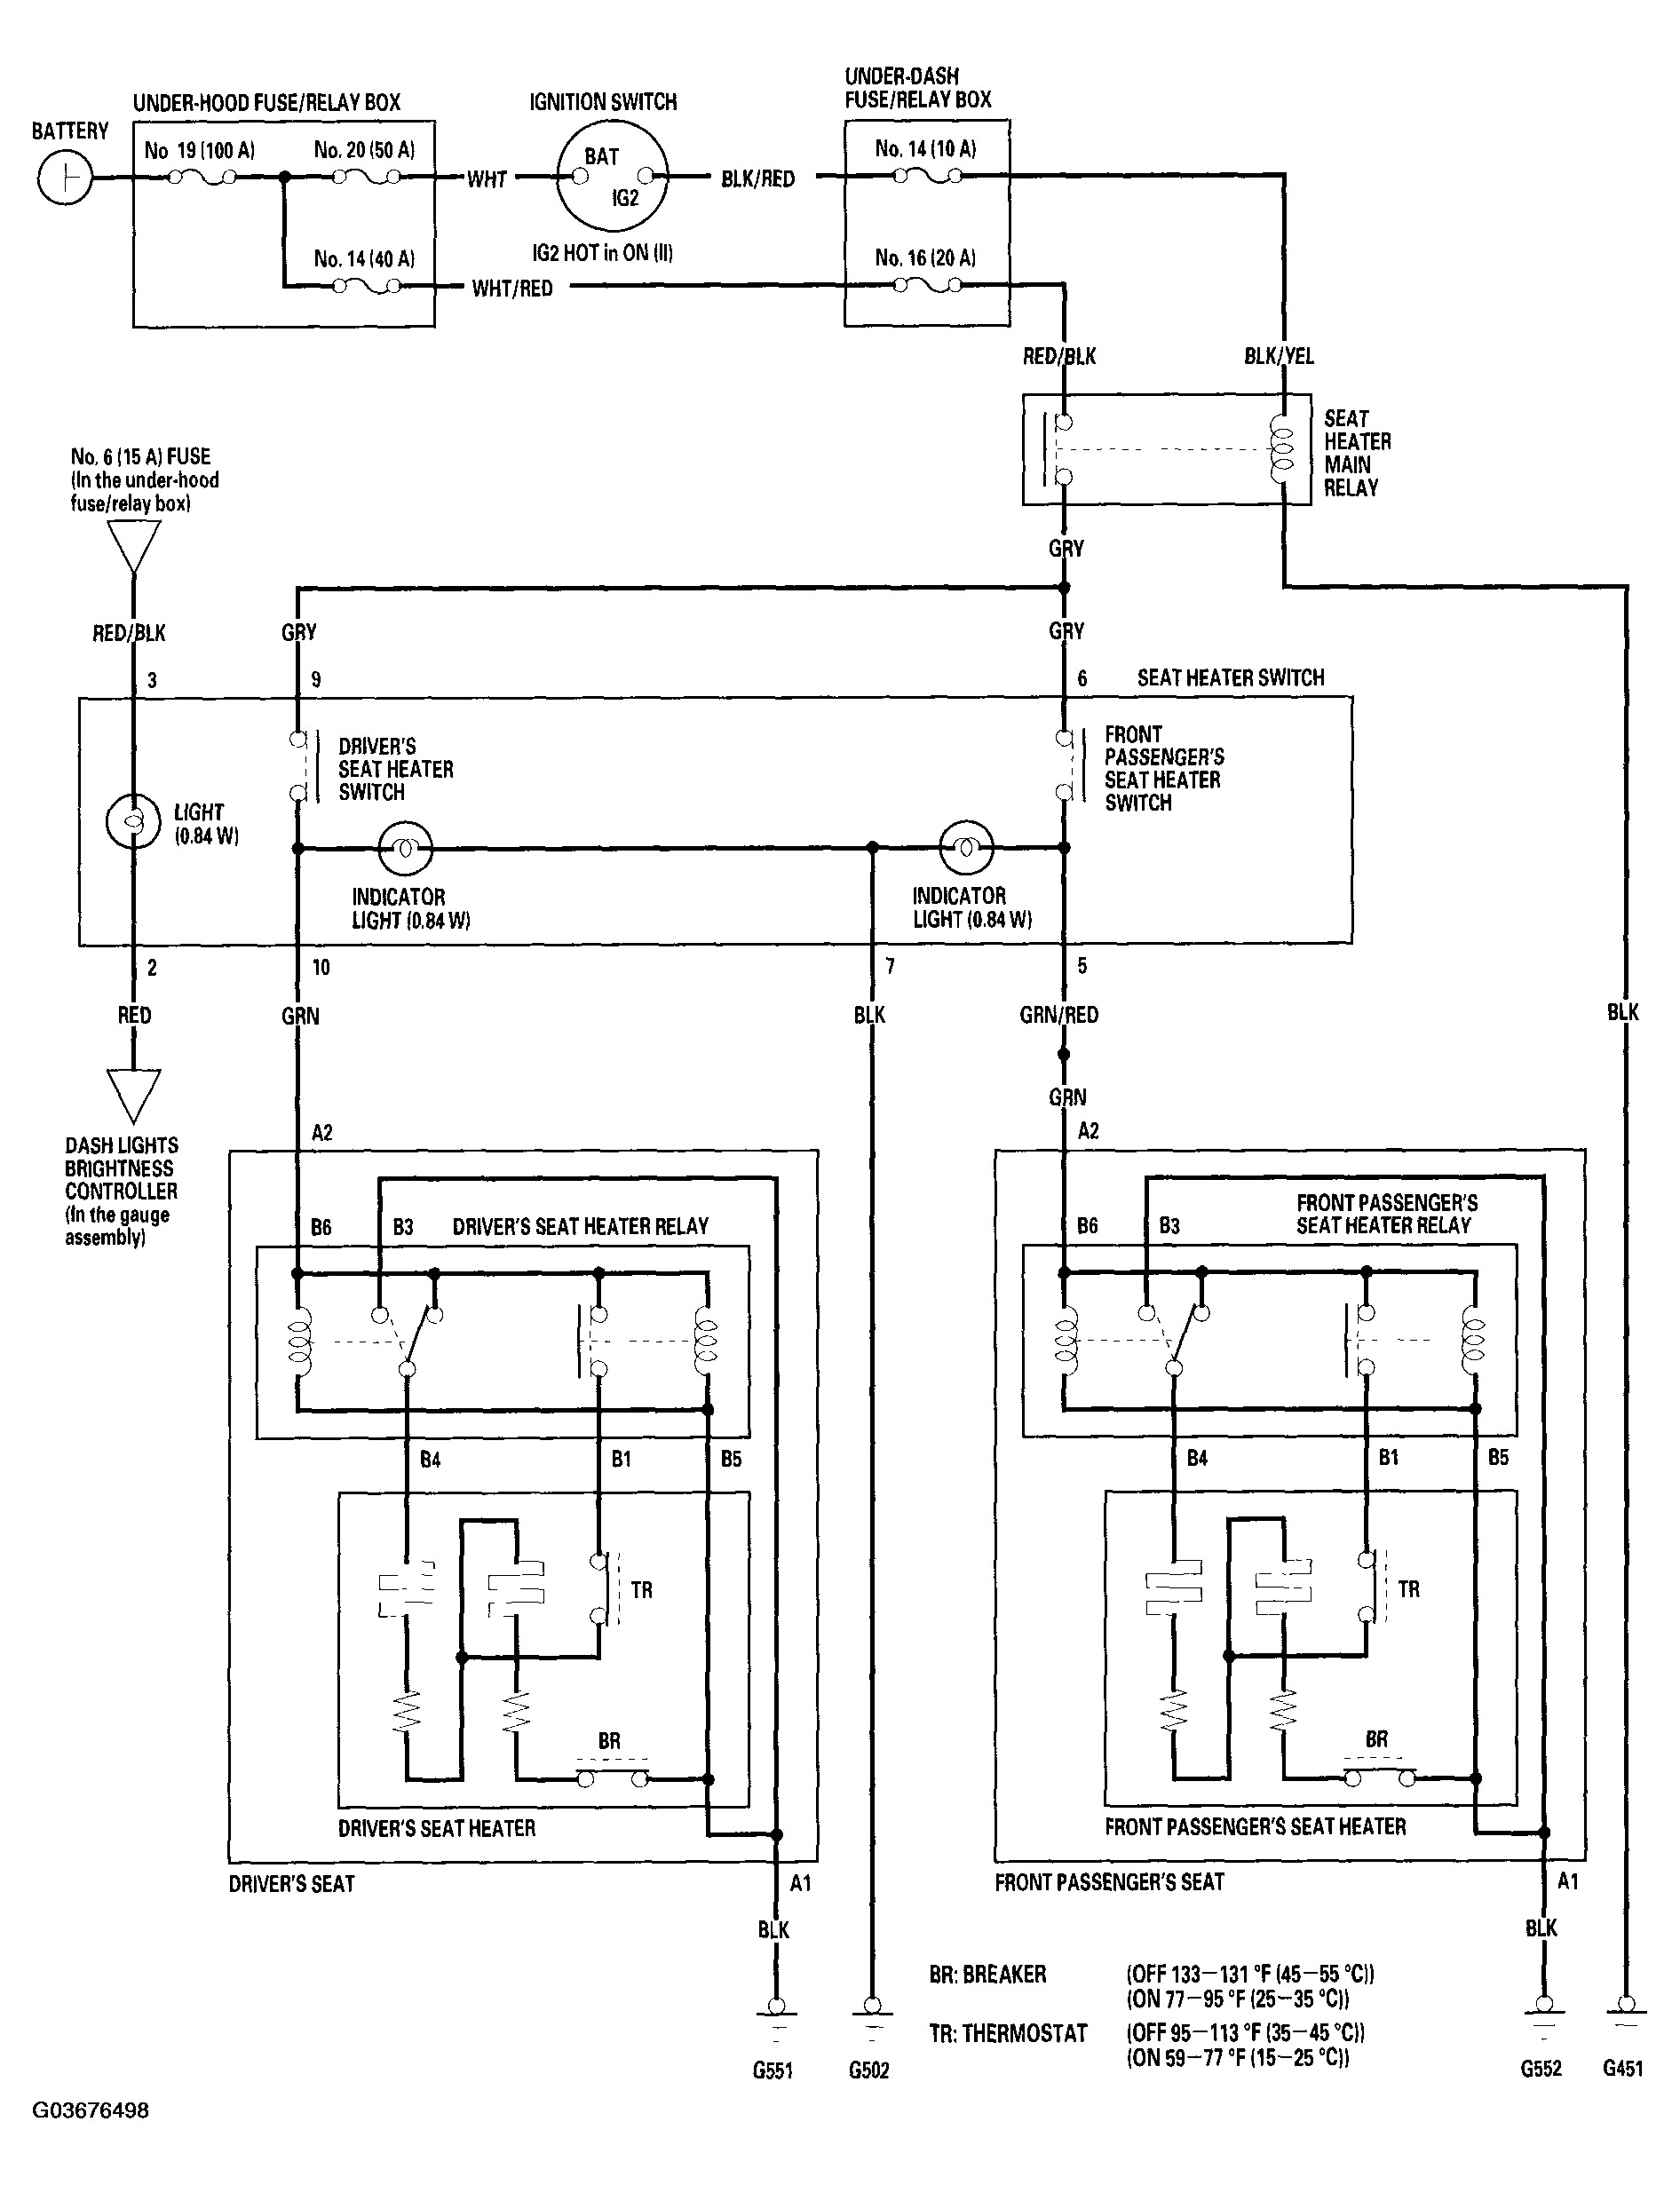 1994 Honda Accord Wiring Diagram from detoxicrecenze.com